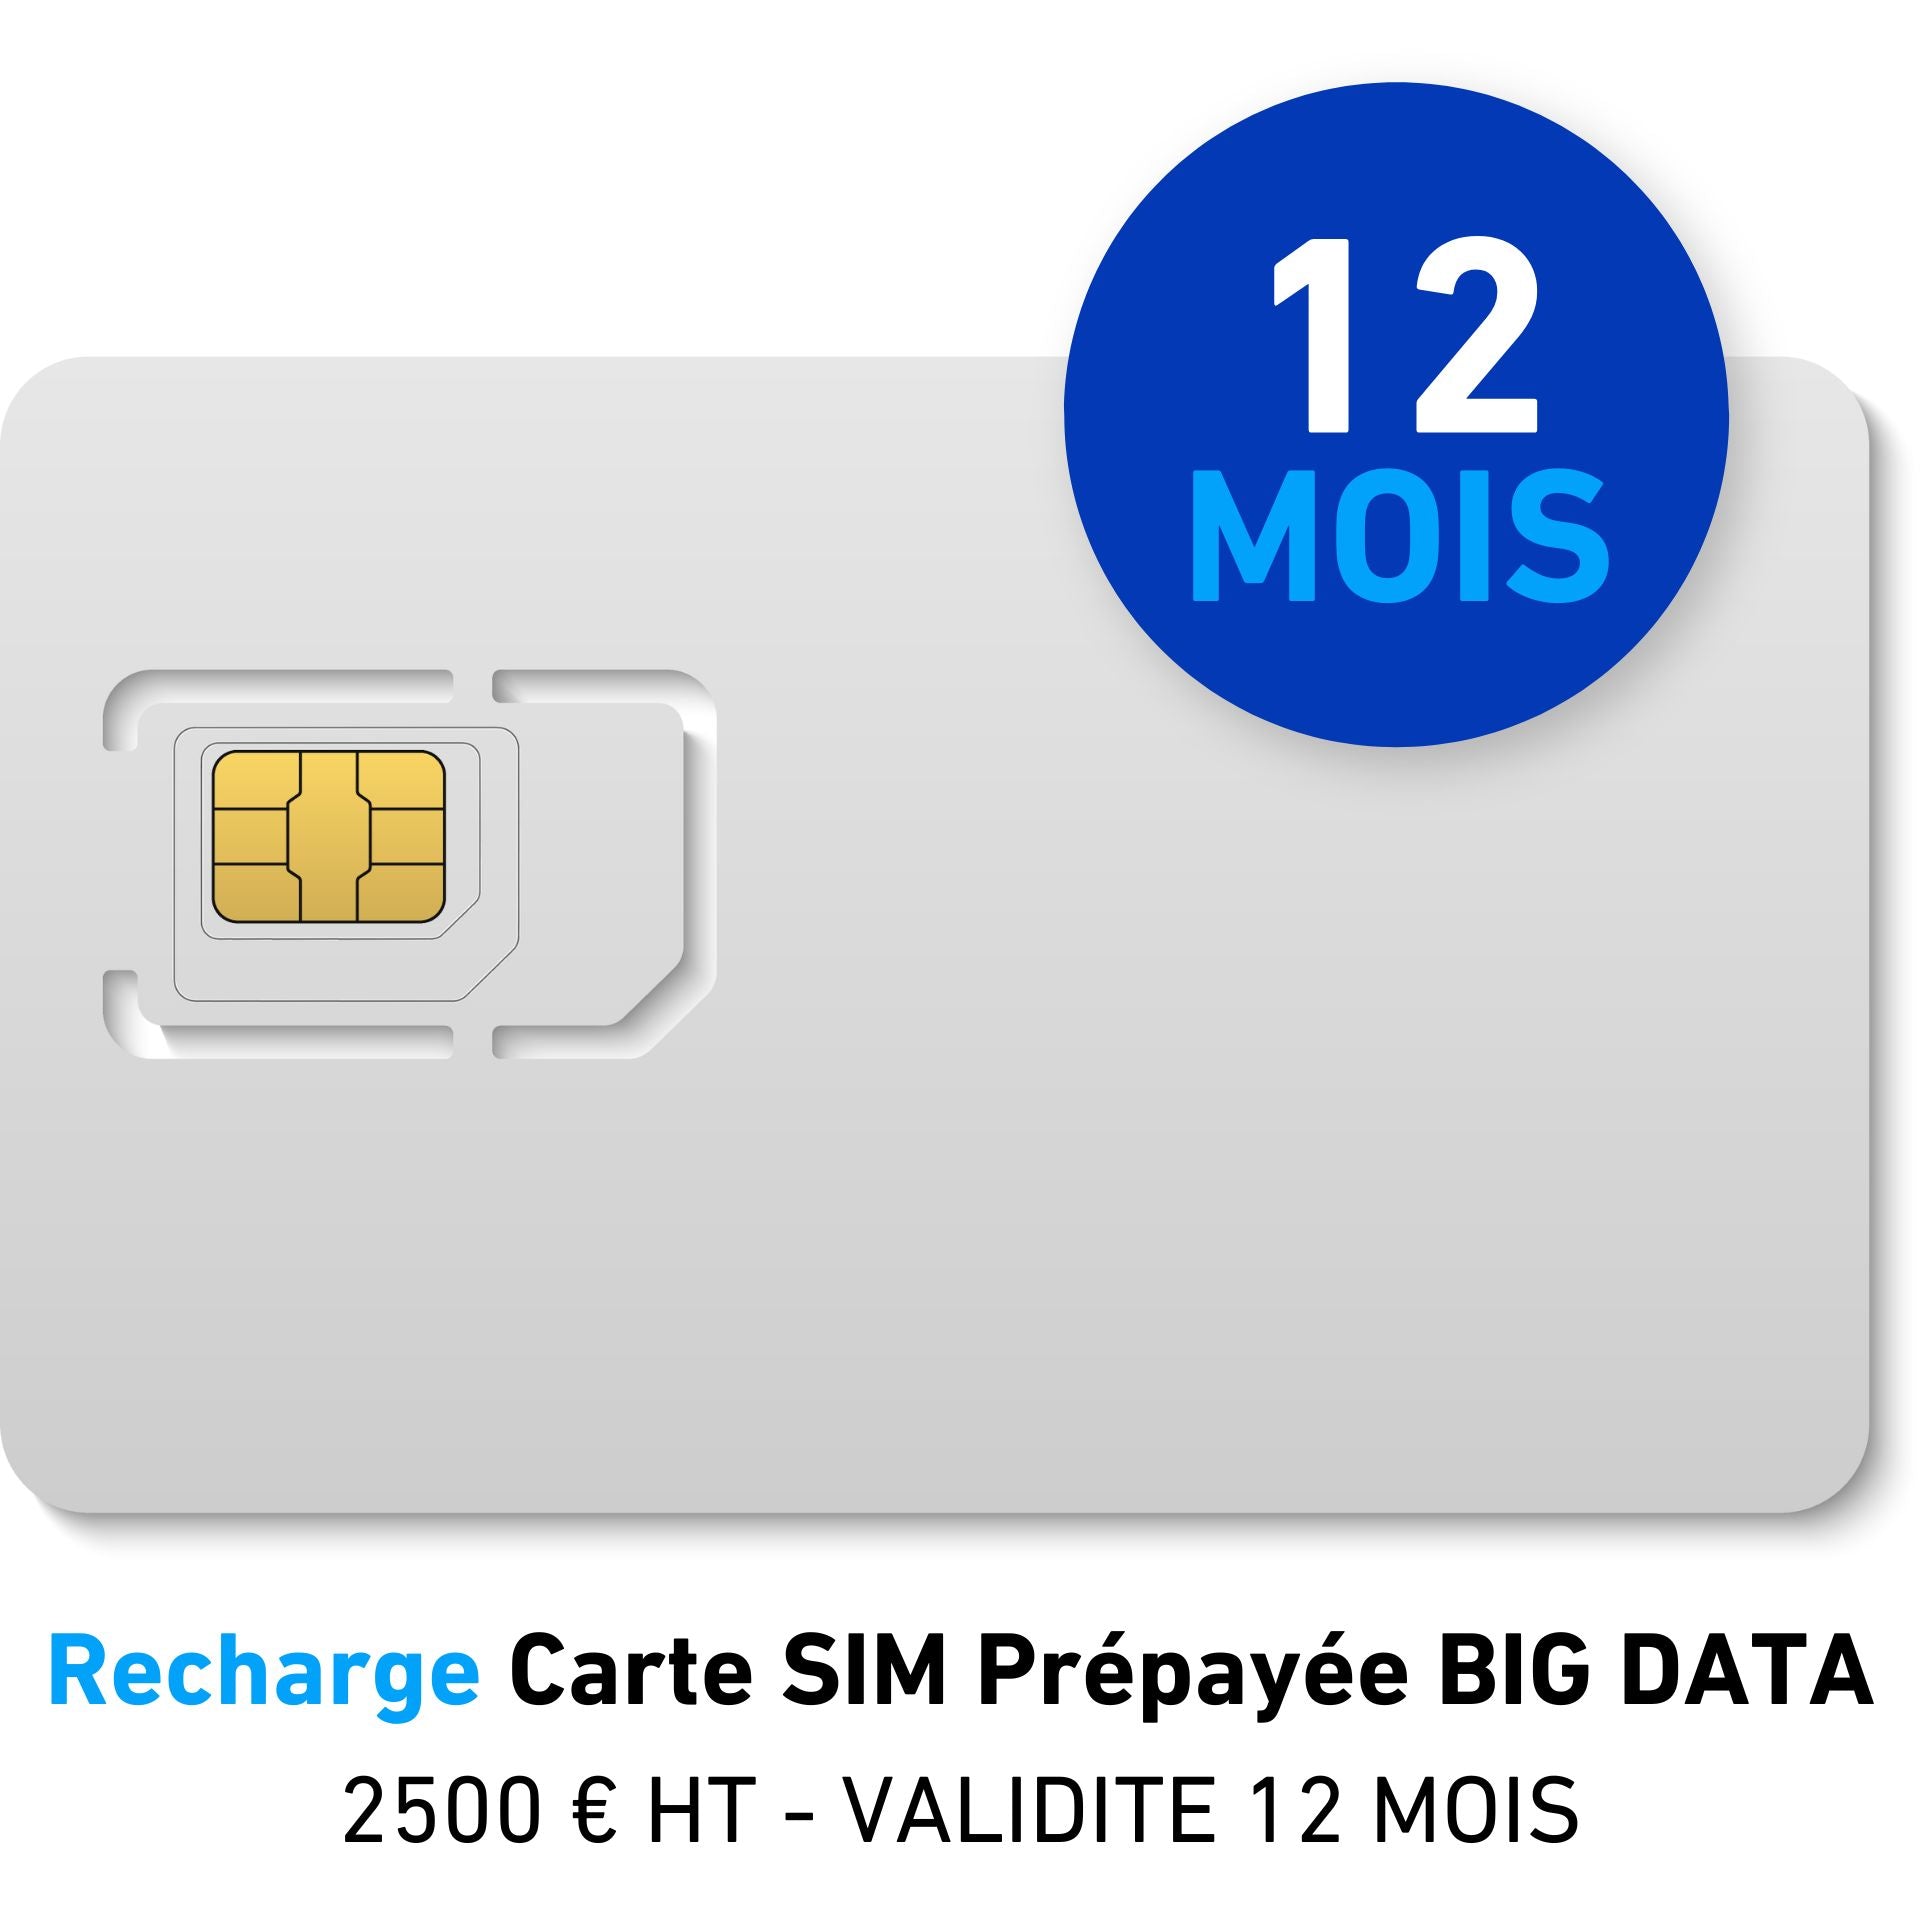 Recharge Carte SIM Prépayée BIG DATA 2500 € HT - VALIDITE 12 MOIS